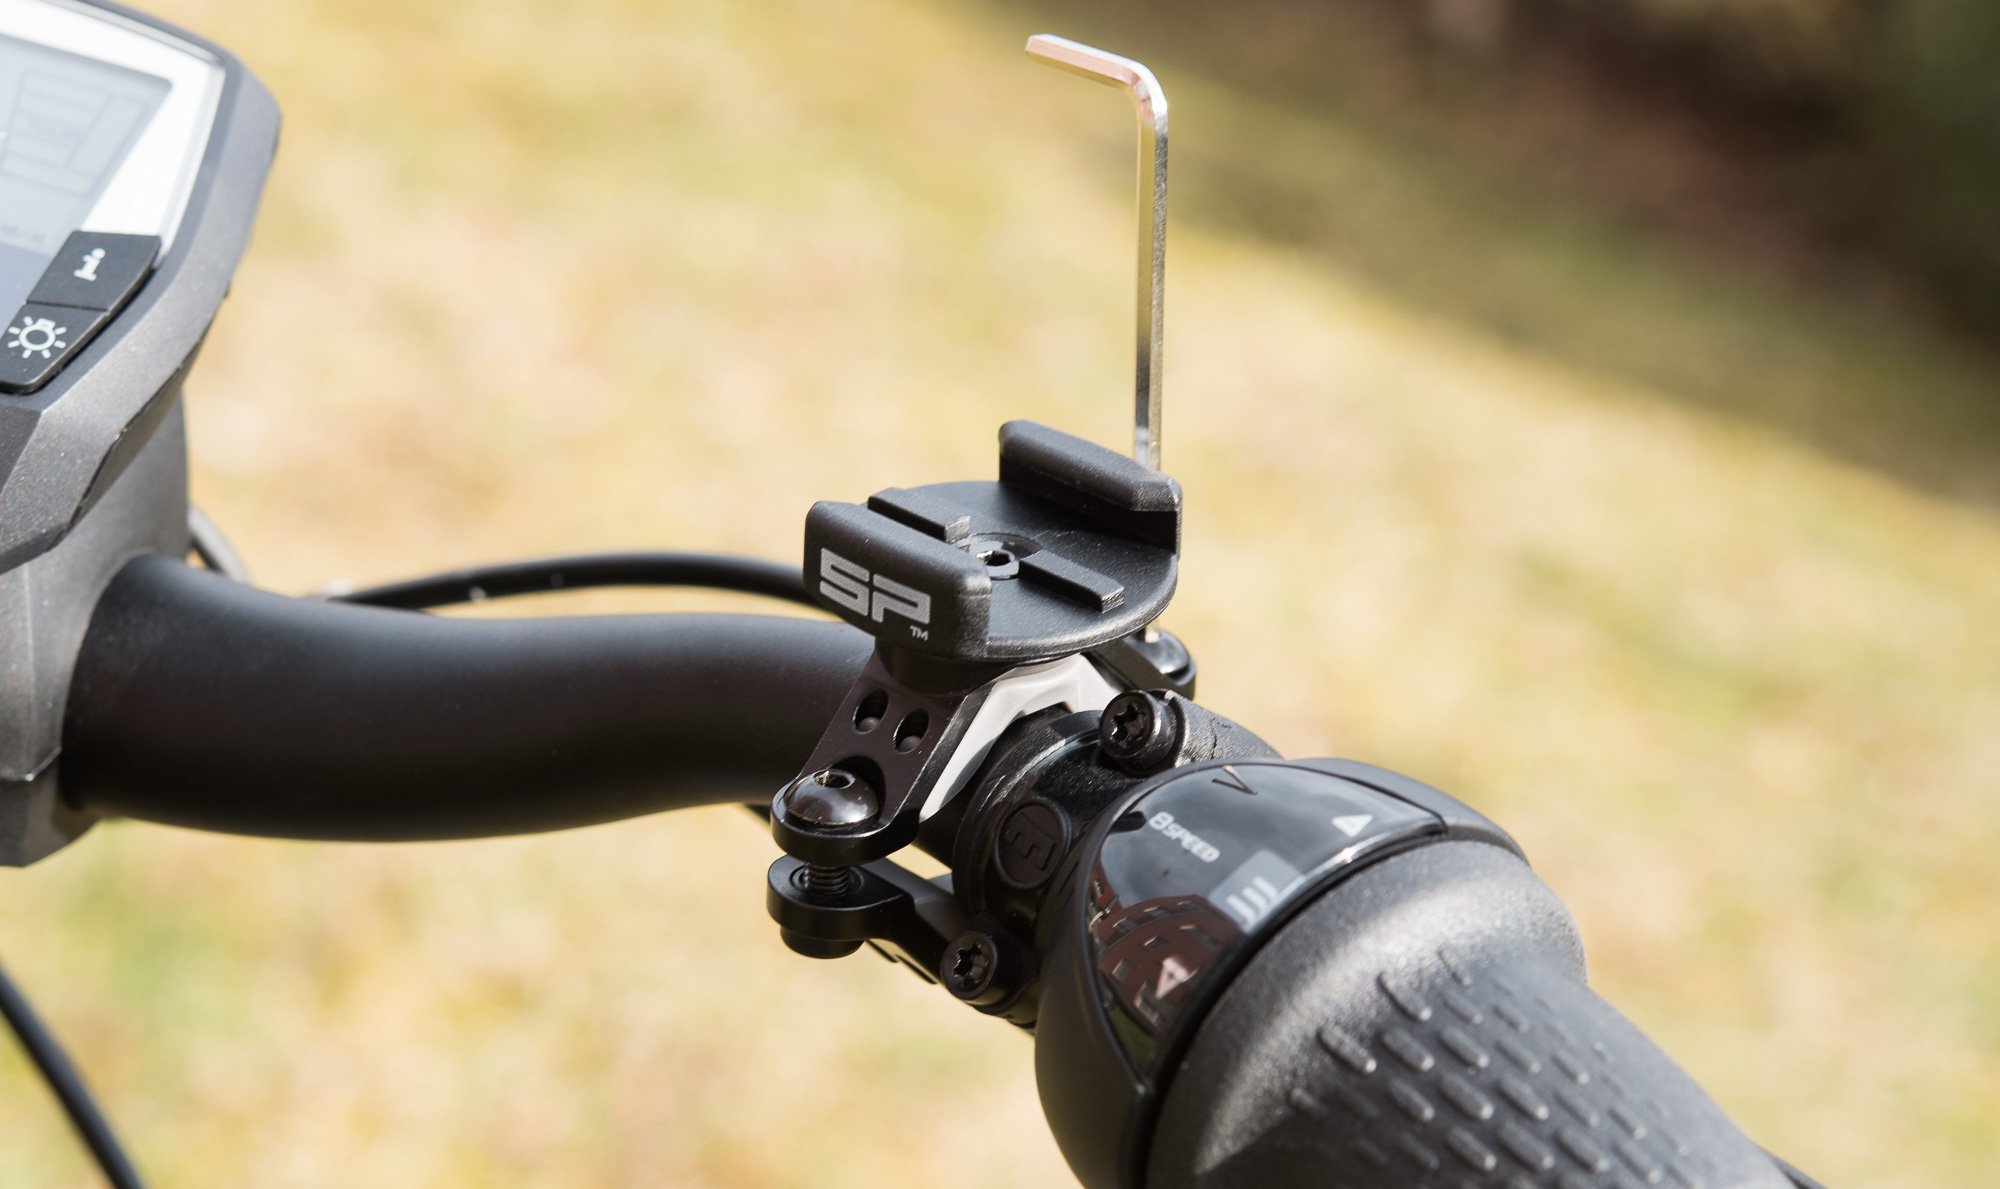 SP Connect Handyhalterung Test - vielseitige Handyhalter für Lenker, Vorbau  und Ahead-Steuersatz - Der Fahrradtour- und Bikepacking-Blog